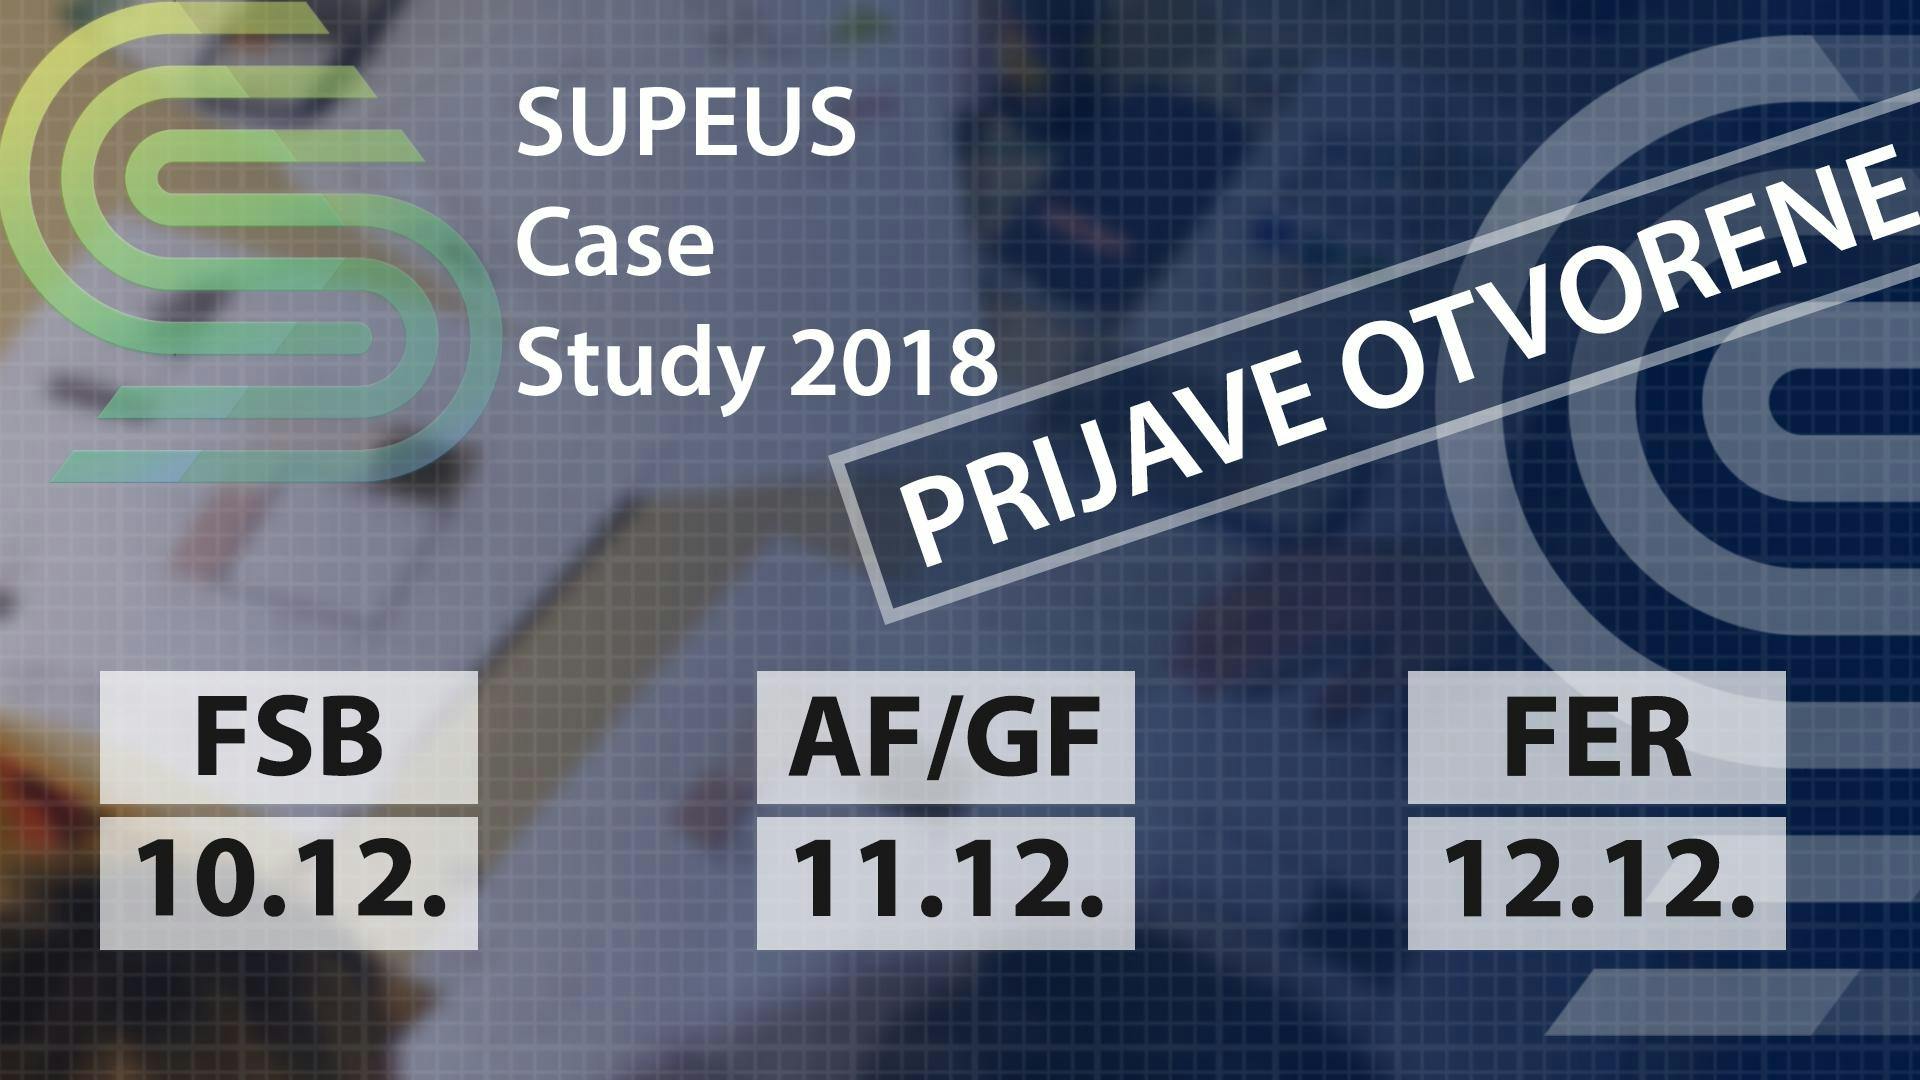 SUPEUS Case Study 2018